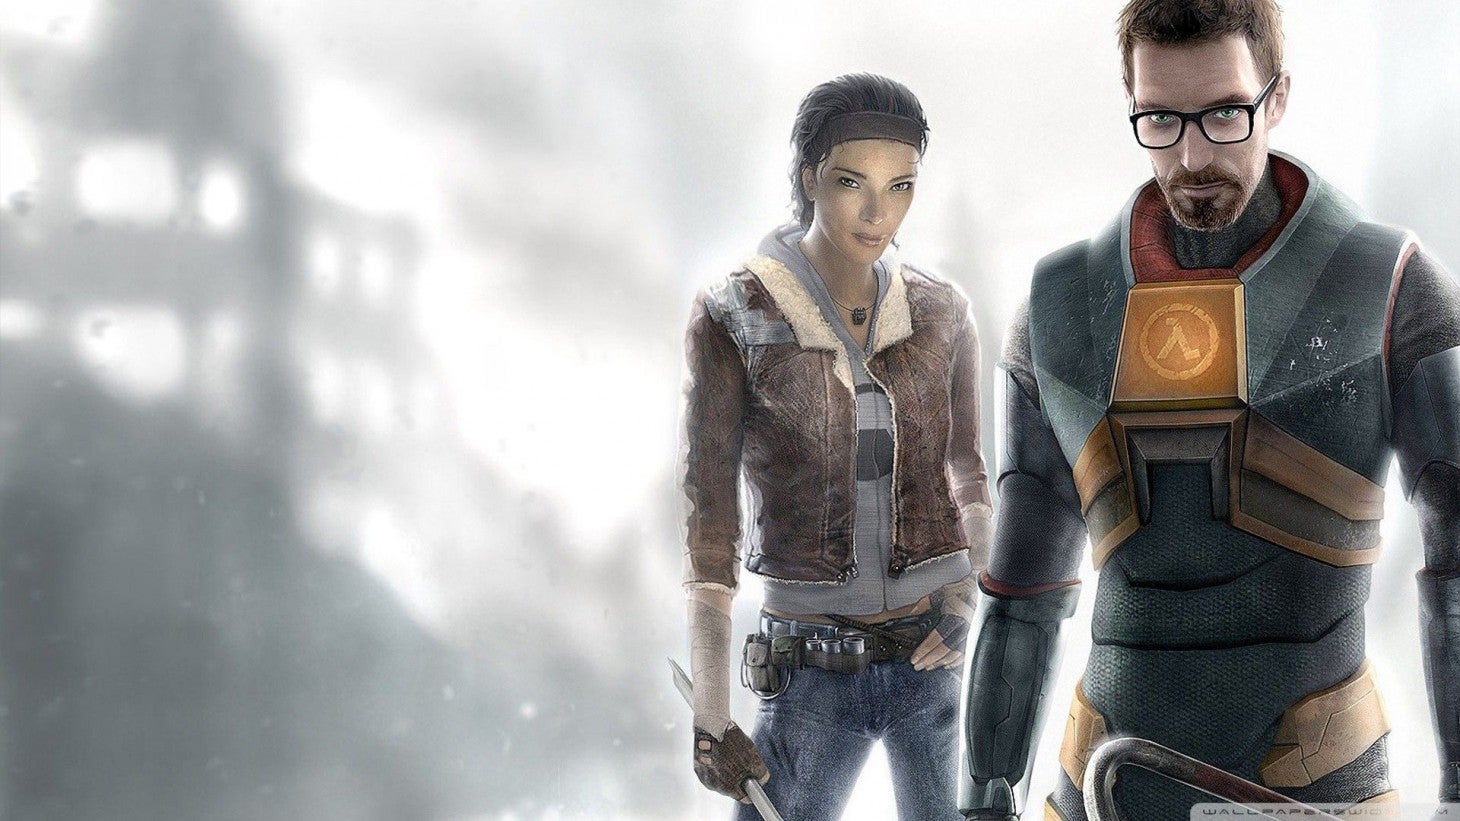 Bilder zu Half-Life 2 Remastered Collection: Fan-Projekt erhält anscheinend Valves Segen